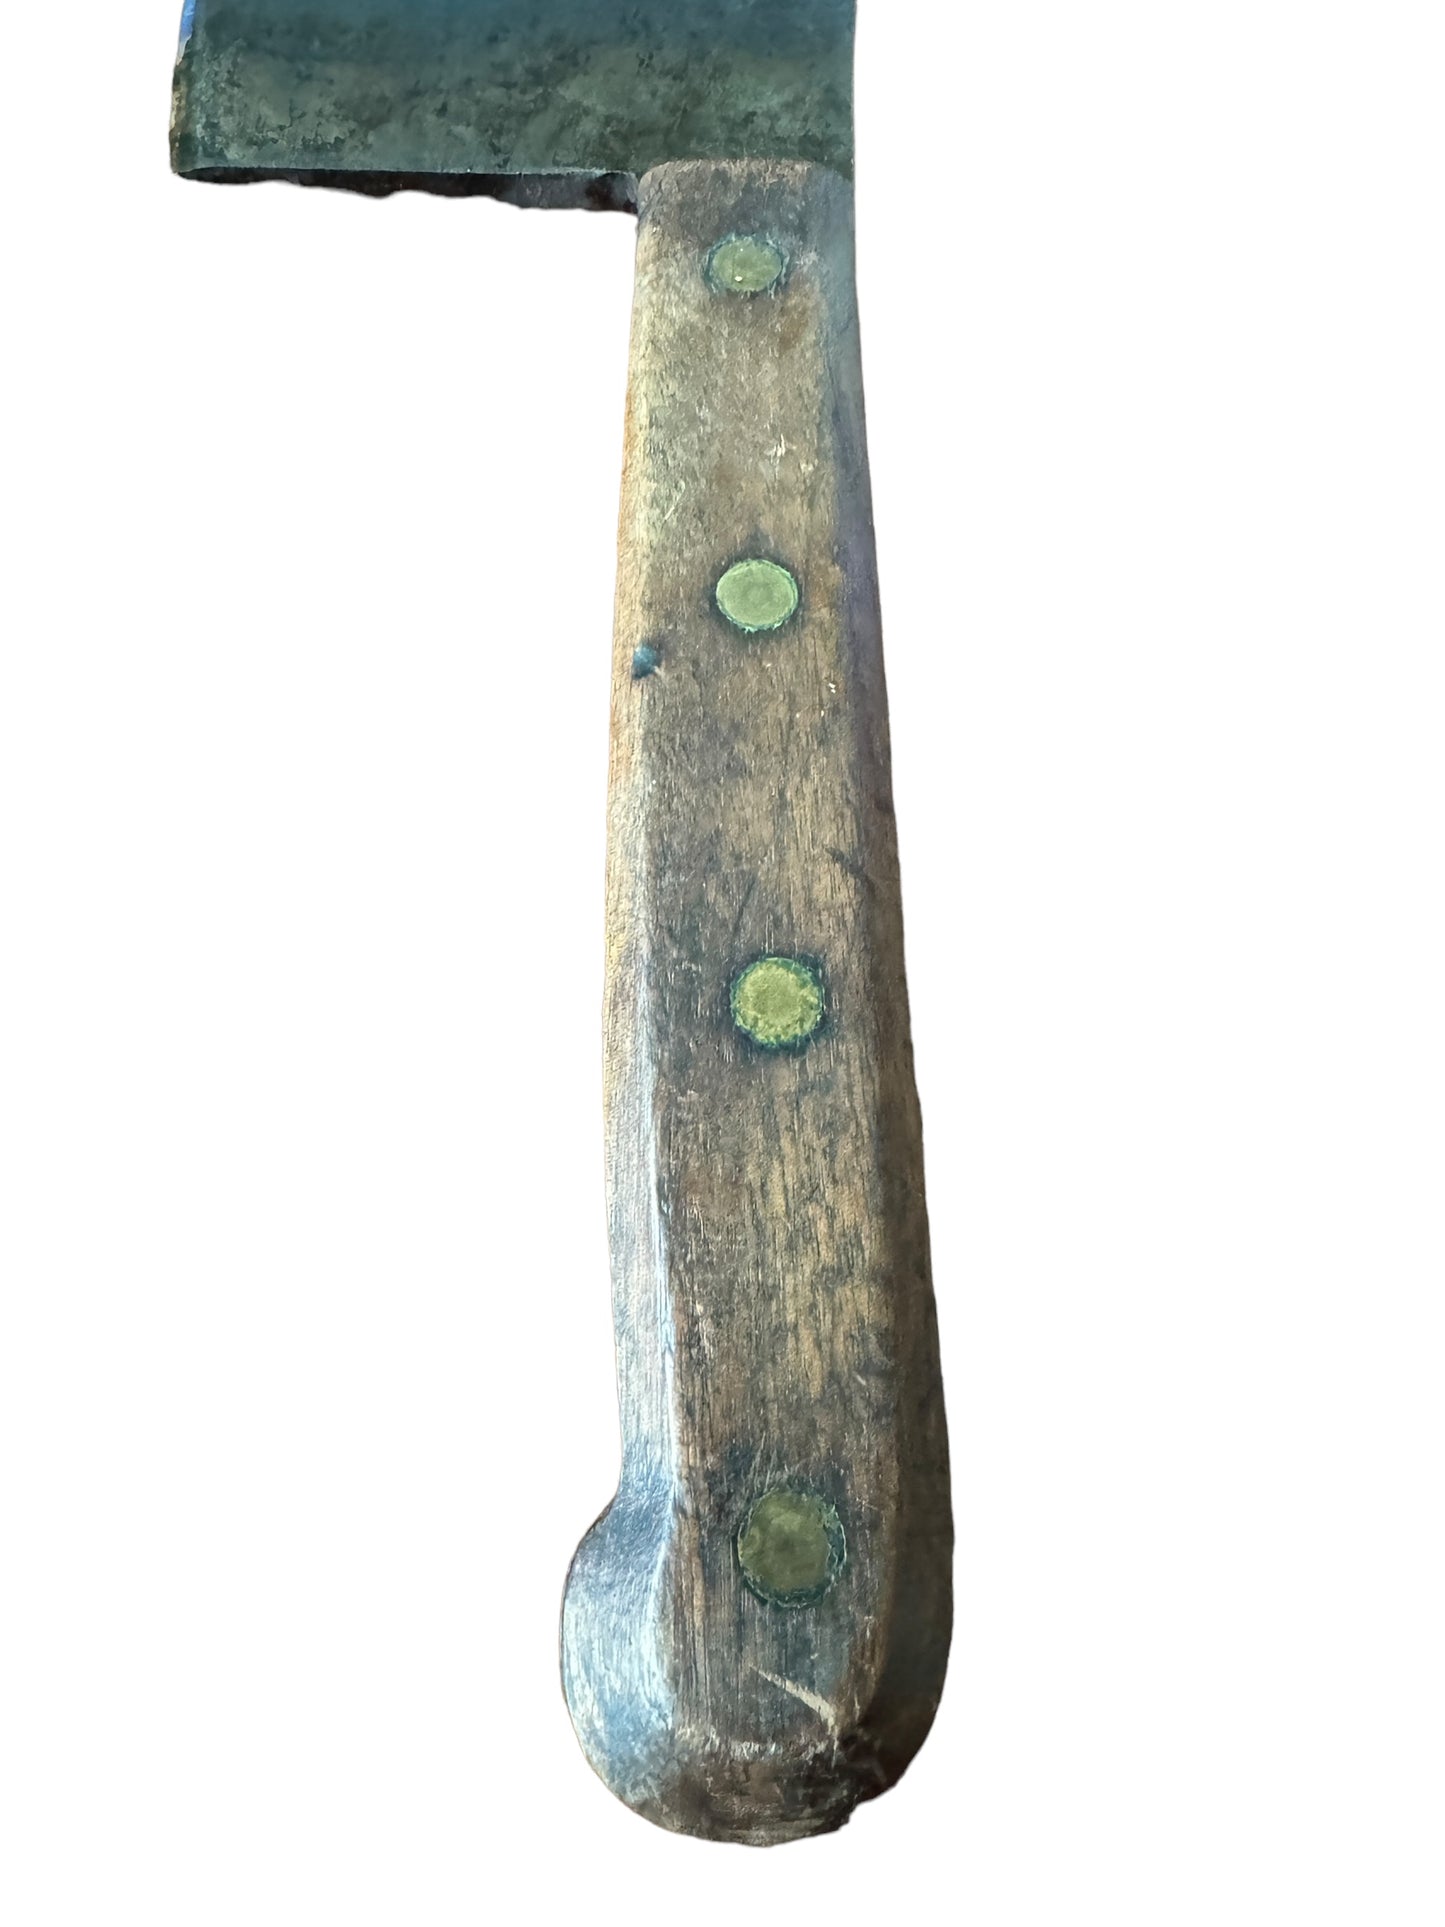 Vintage Village Blacksmith Butcher Meat Cleaver Wood Handle, 15” Long 8” Blade #8